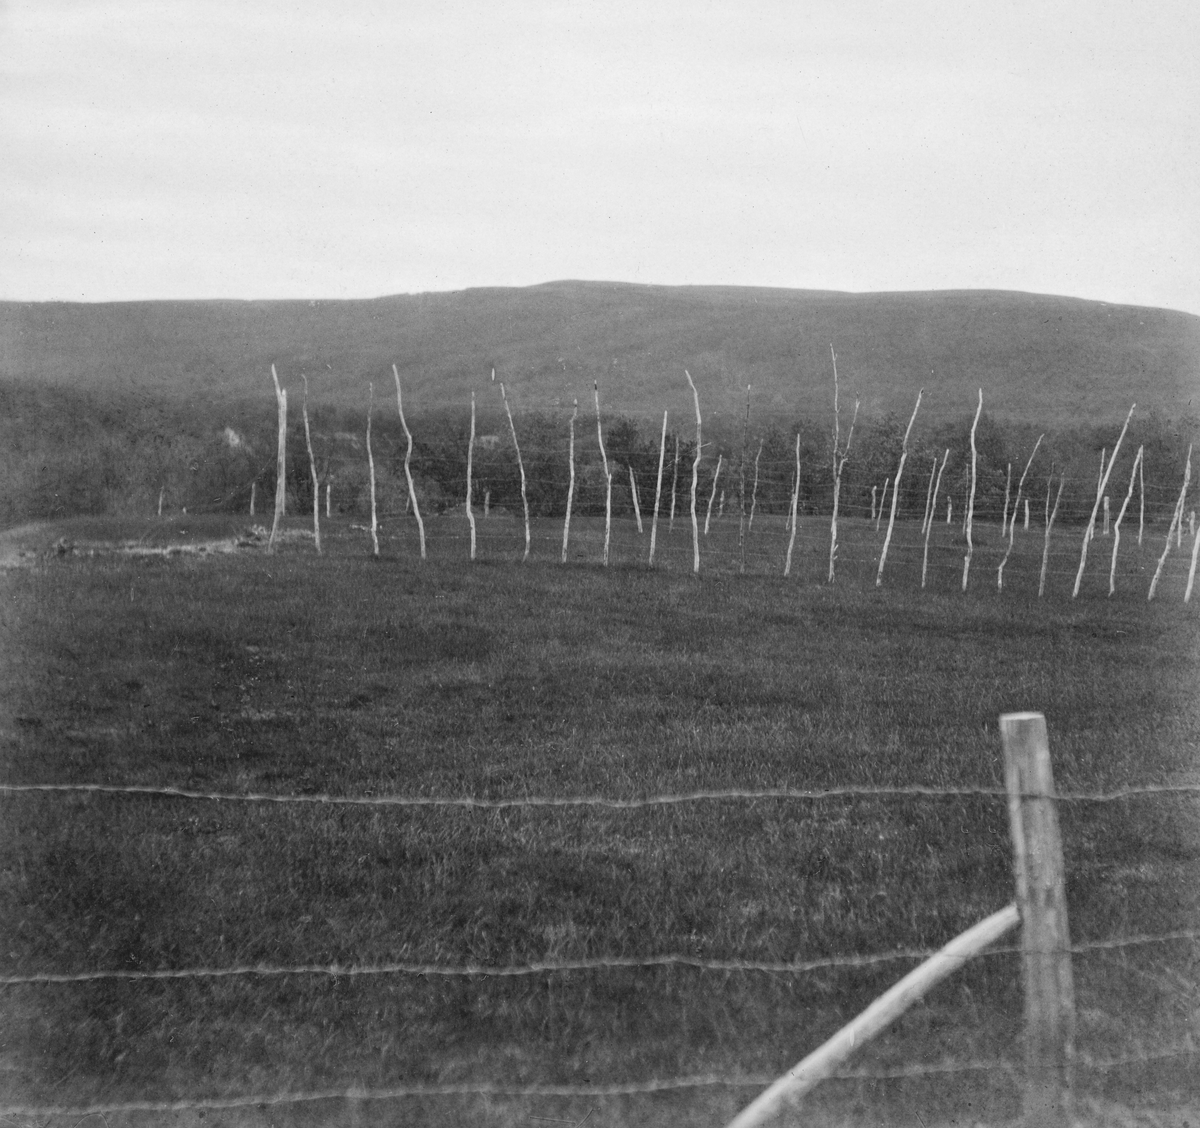 Engareal med skog i bakgrunnen. Fotografiet skal være fra Tana i Øst-Finnmark. Det er antakelig tatt fra en veg som var skilt fra det nevnte engaeralet ved hjelp av et piggtrådgjerne. Inne på enga sto det rekker av bjørkerajker med sdtåltrådstrenger på. antakelig hesjer, brukt til å tørke gras som skulle bli til høy, vinterfôr for buskapen. Det fotografen som har tatt fotografiet har vært opptatt av er imidlertid skogen i bakgrunnen. På kartotekkortet har han skrevet «Teigehugst. De lysere striper i bakgrunnen er hugne teiger. "Mellemteigene" er mørkere.» Akkurat dette er det vanskelig å skjelne på den bevarte versjonen av fotografiet, men bildeteksten vitner i hvert fall om forsøk med dette avvirkningsprinsippet.

Teighogst var tidlig på 1900-tallet den gjengse betegnelsen på det som seinere har vært kalt «snauhogst». I skogforvalter Agnar Barths «Skogbrukslære» (1905-utgaven) står det: «Ved denne Hugstform venter man, at Hugstfladens Besaaning skal besørges af den omkringstaaende Skog. Selve Hugstfladen blottes derfor samtidig for alle ældre Trær og ryddiggjøres tillige for enkeltvis forekommende yngre Stammer eller mulig opkommen spredt Eftervækst, da disse Træer paa Grund af siun frie Stilling alene vil komme til at vokse ud til grovkvistede, vidkronede, lidet nytbare Stammer.»